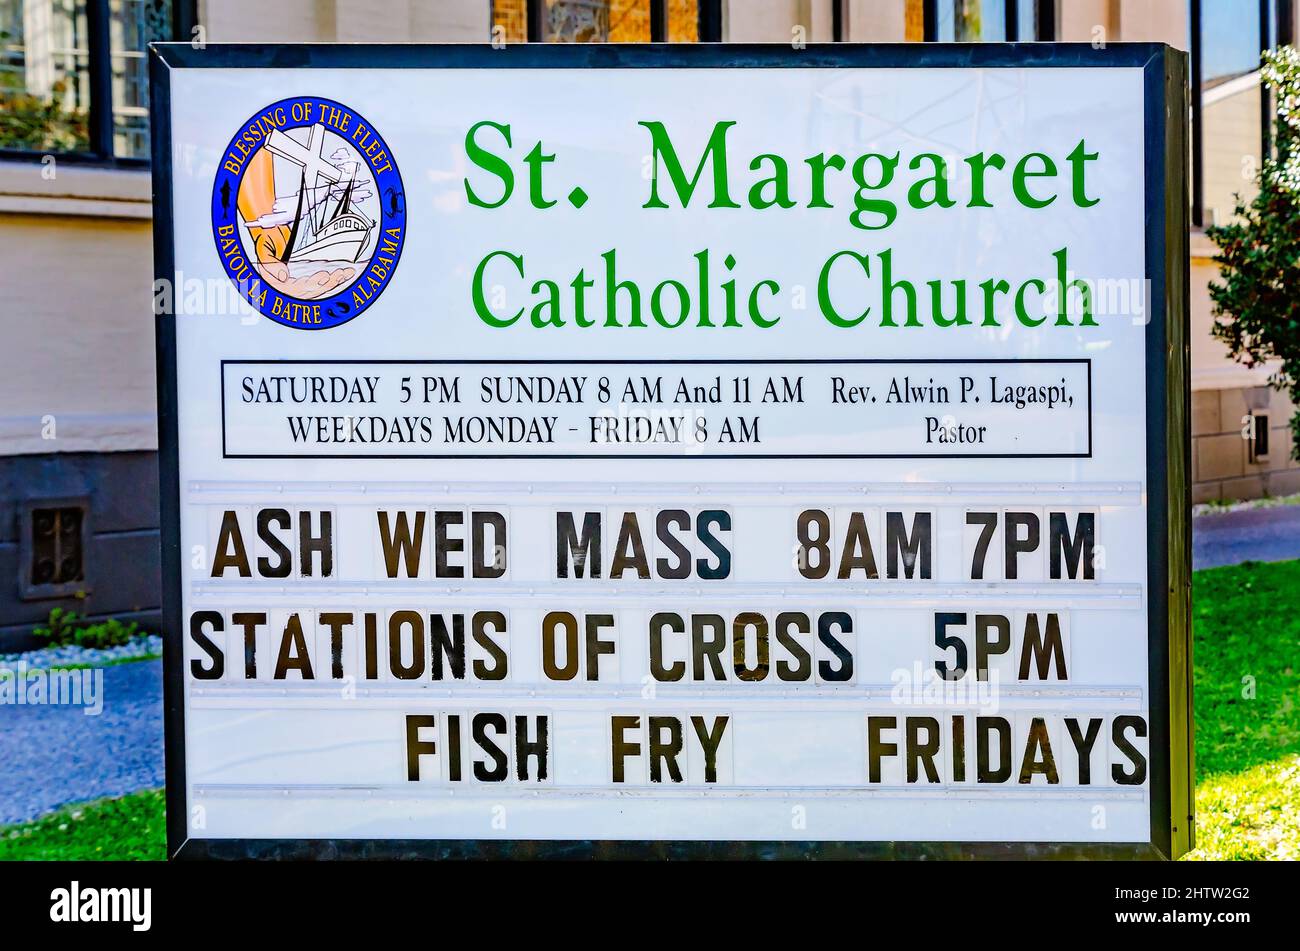 Un segno annuncia i tempi per la messa, i servizi del Mercoledì delle Ceneri e Fish Fry Fridays alla chiesa cattolica di St. Margaret a Bayou la Batre, Alabama. Foto Stock